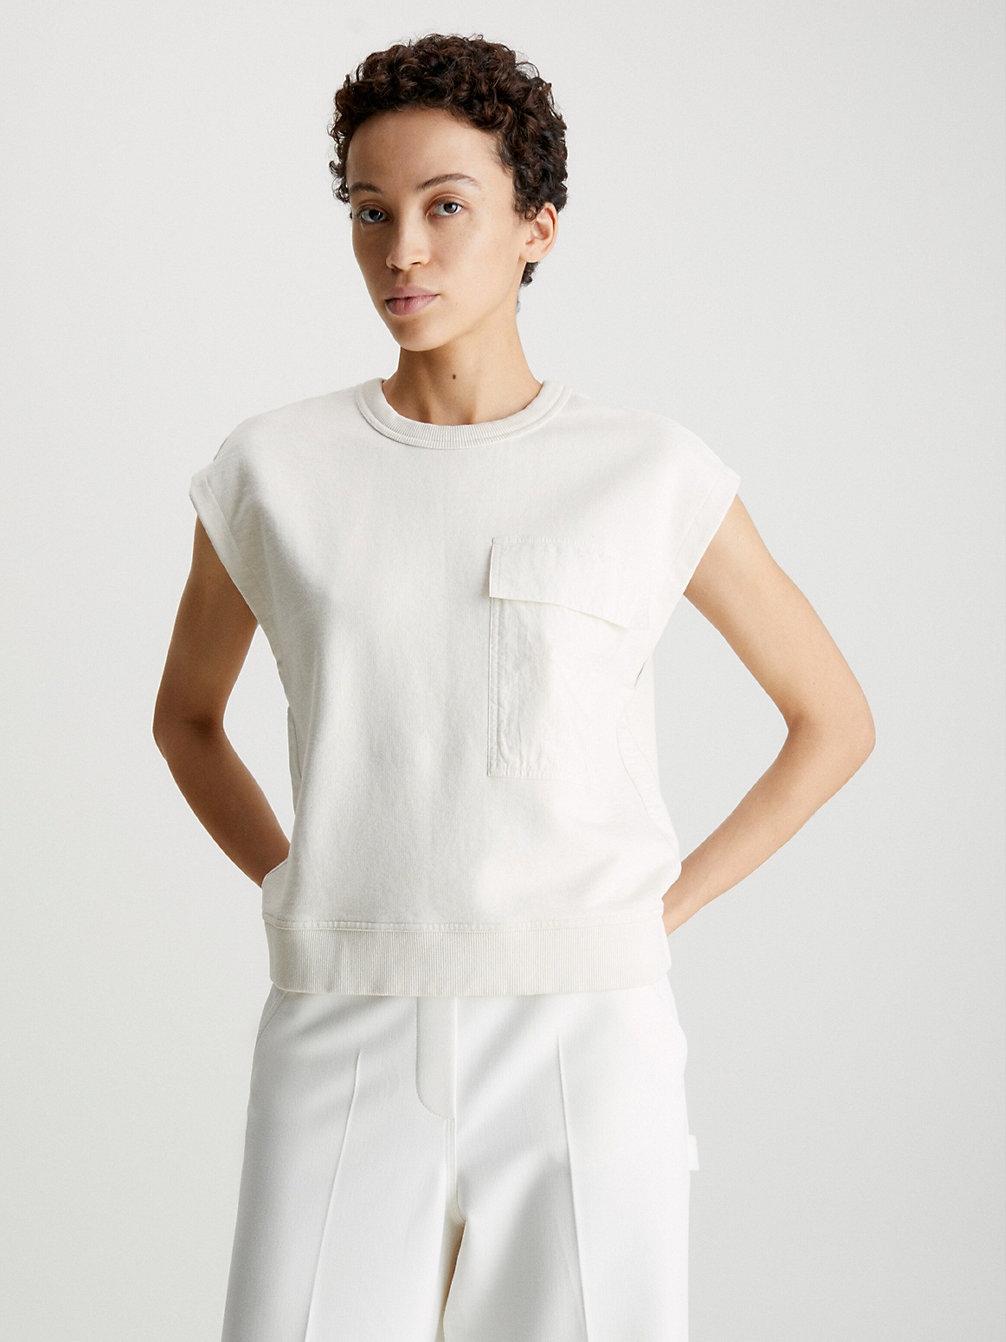 RAW ECRU Textured Cap Sleeve Sweatshirt undefined women Calvin Klein